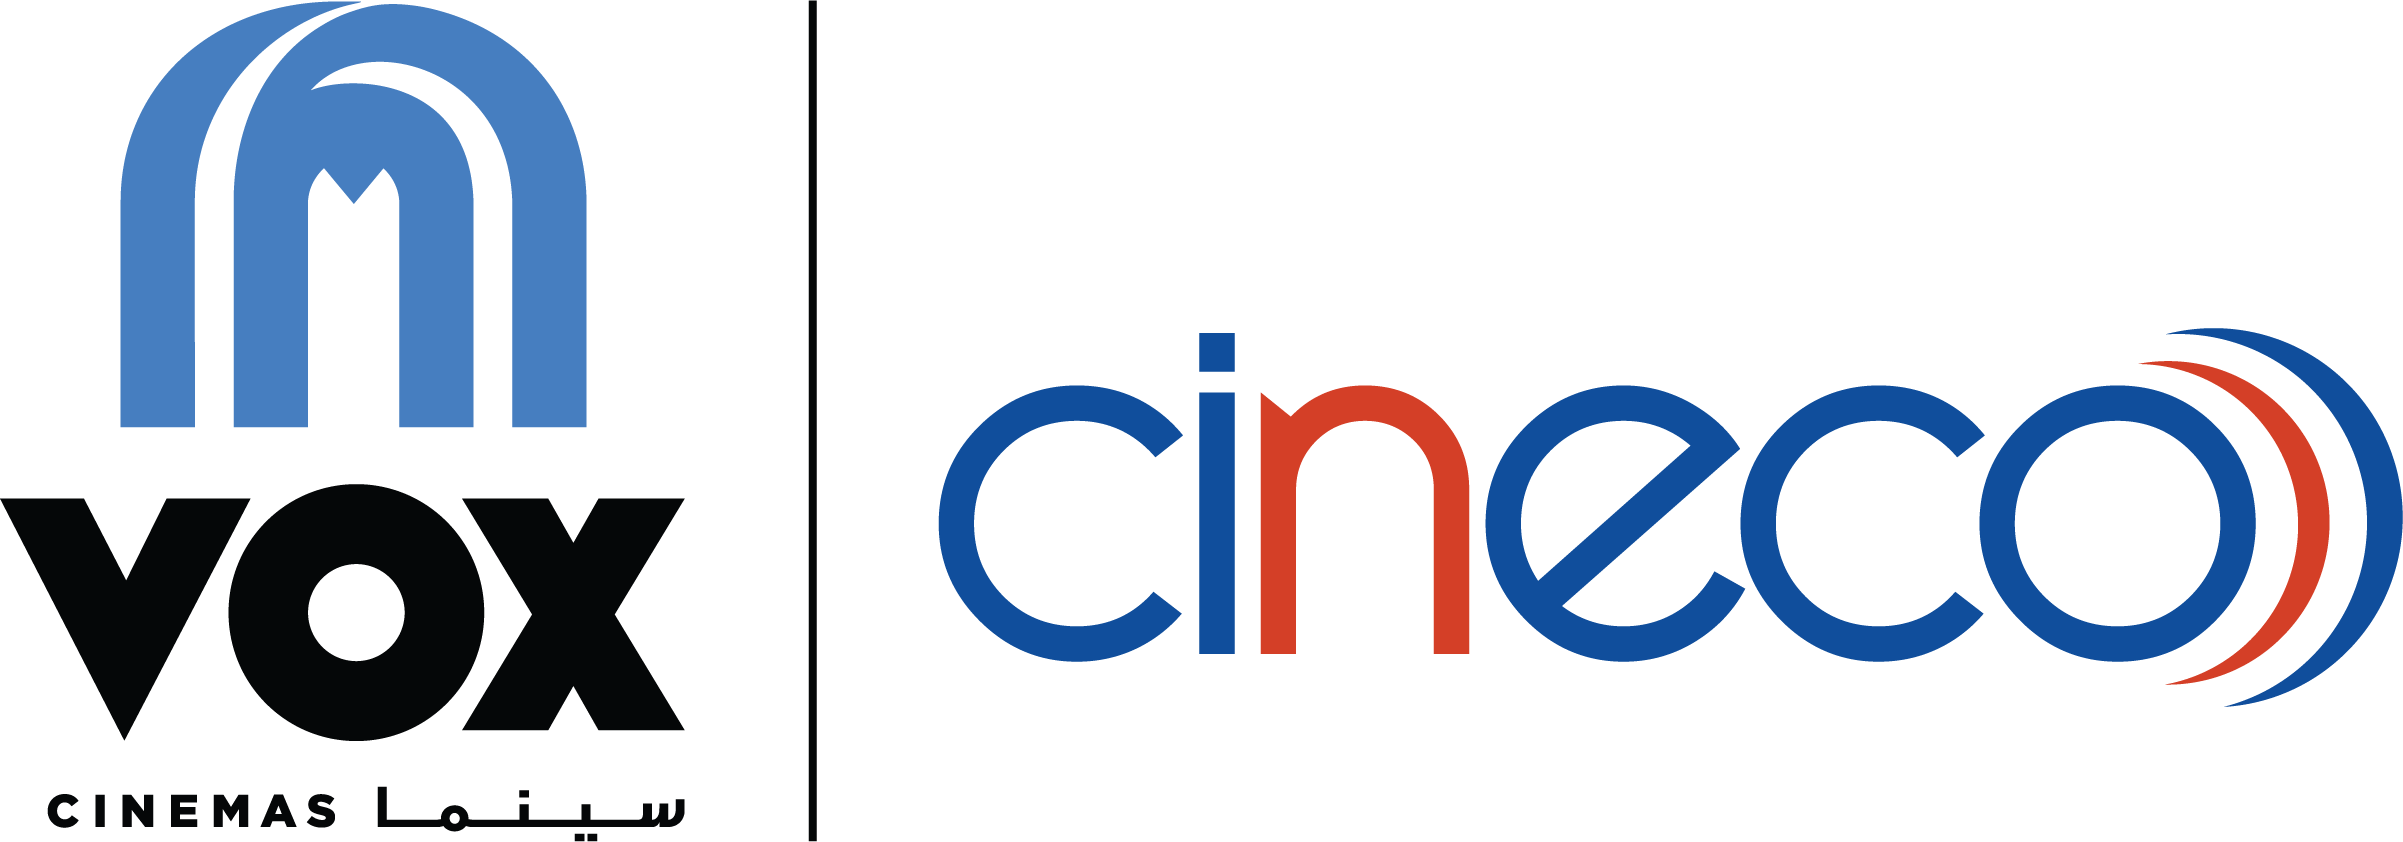 VOX-CINECO-Logo small